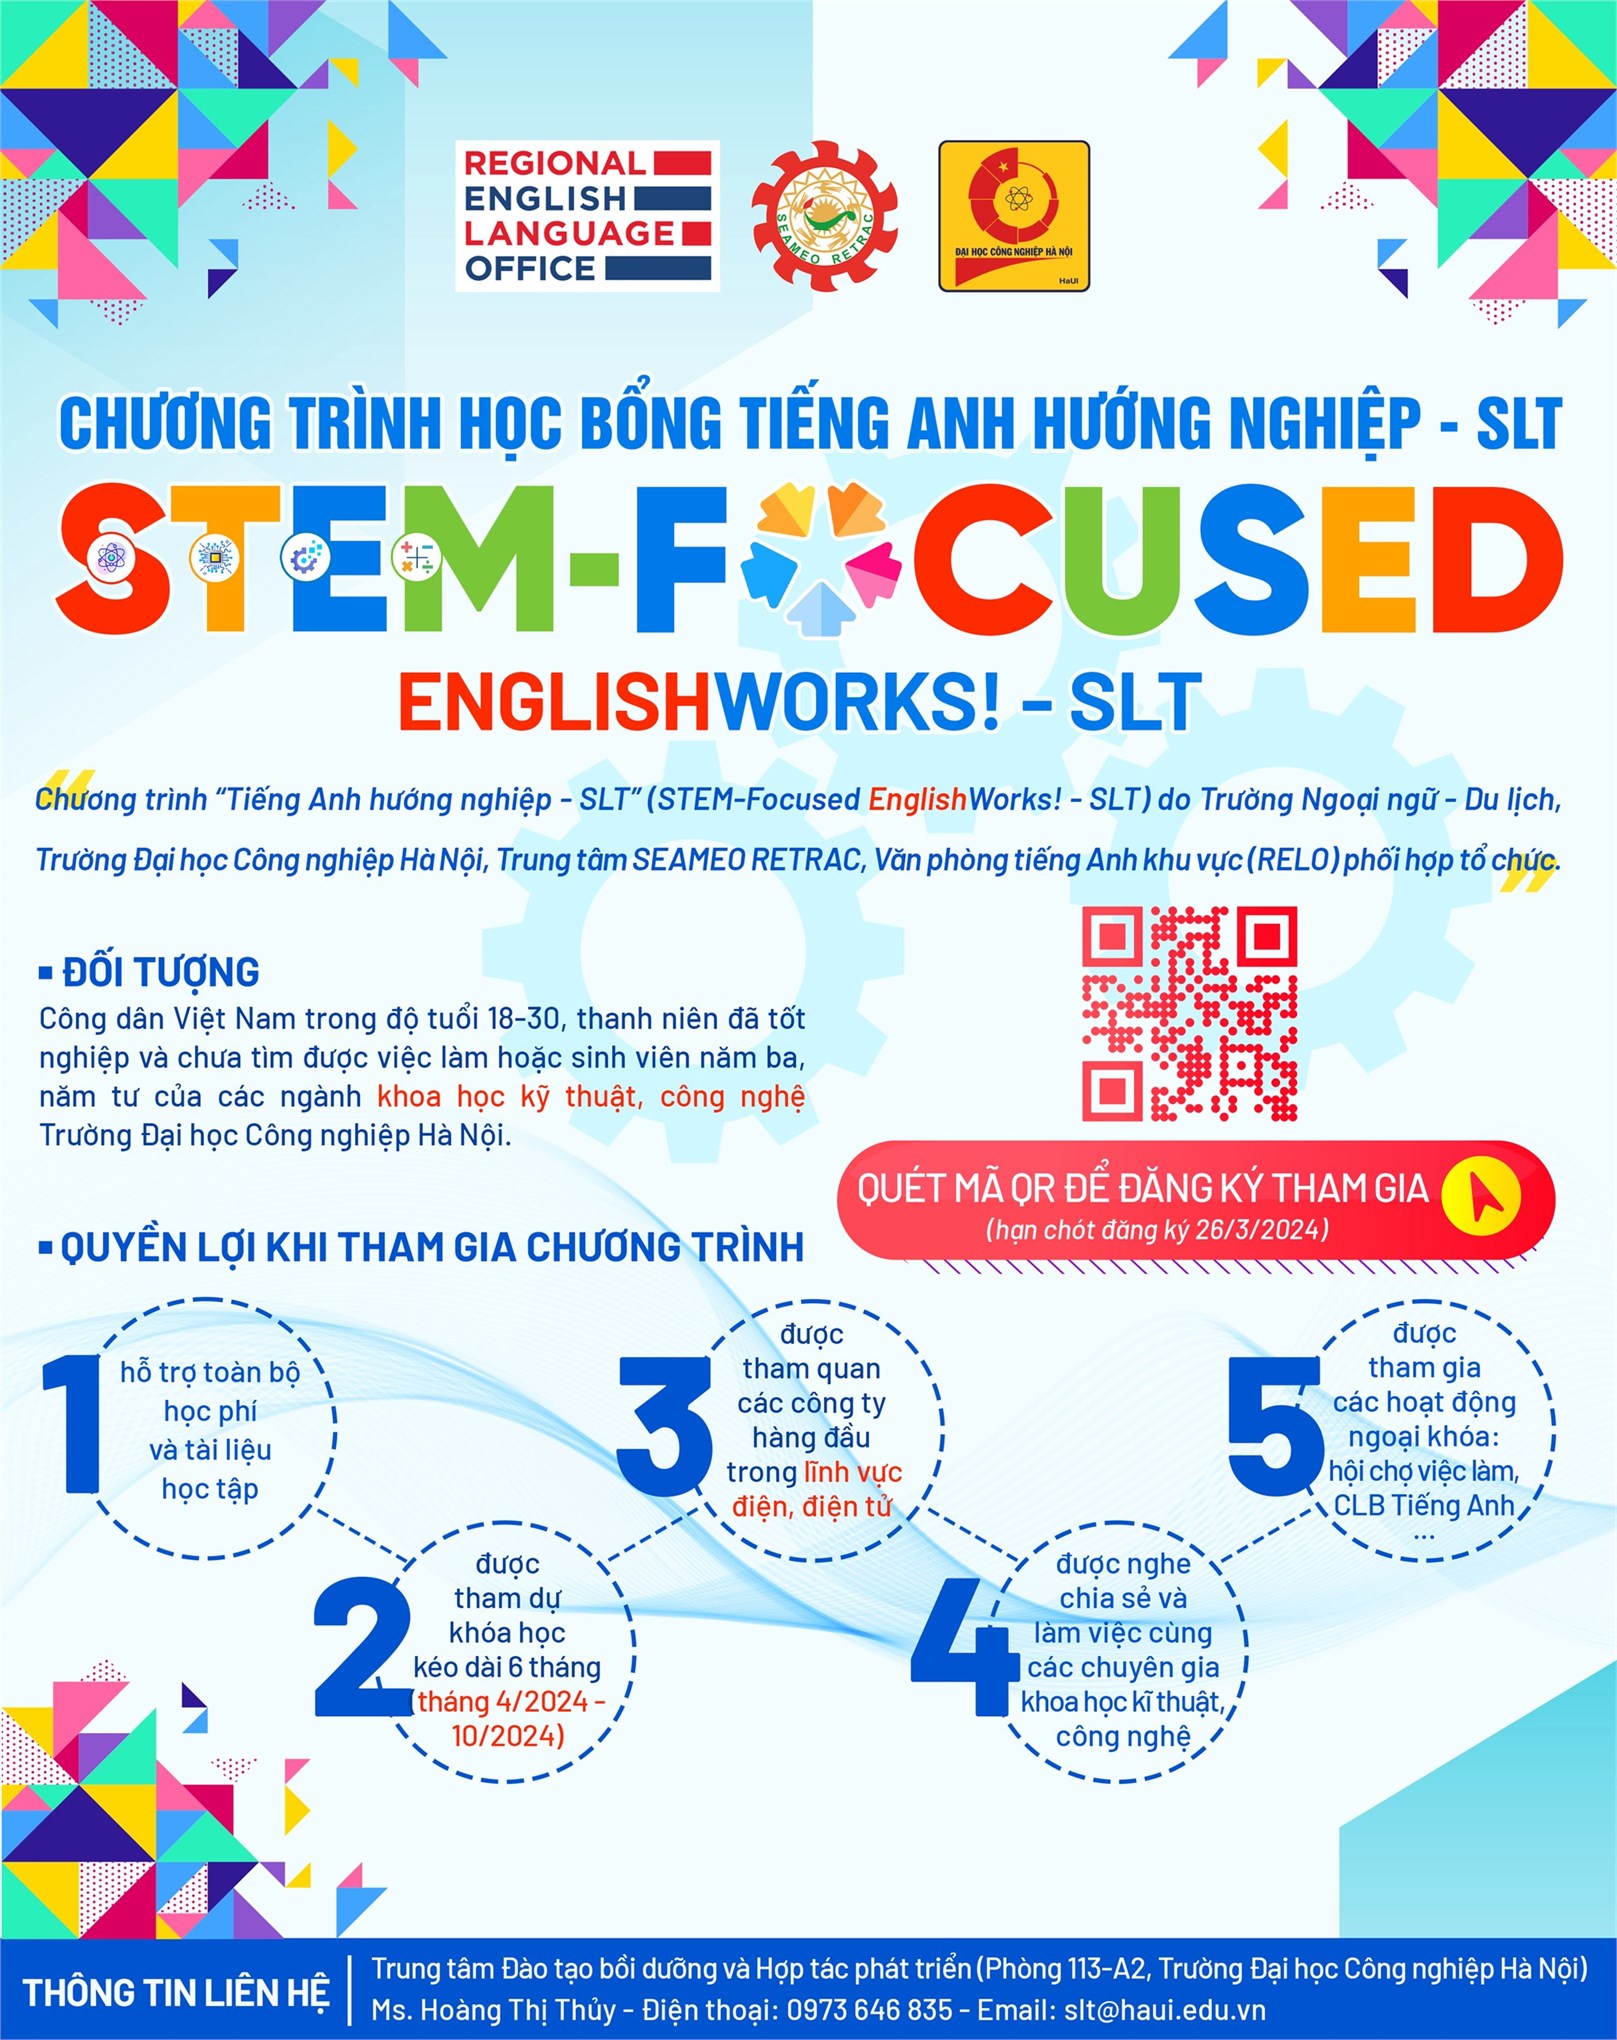 Chương trình học bổng “Tiếng Anh hướng nghiệp - SLT” STEM-Focused EnglishWorks! - SLT